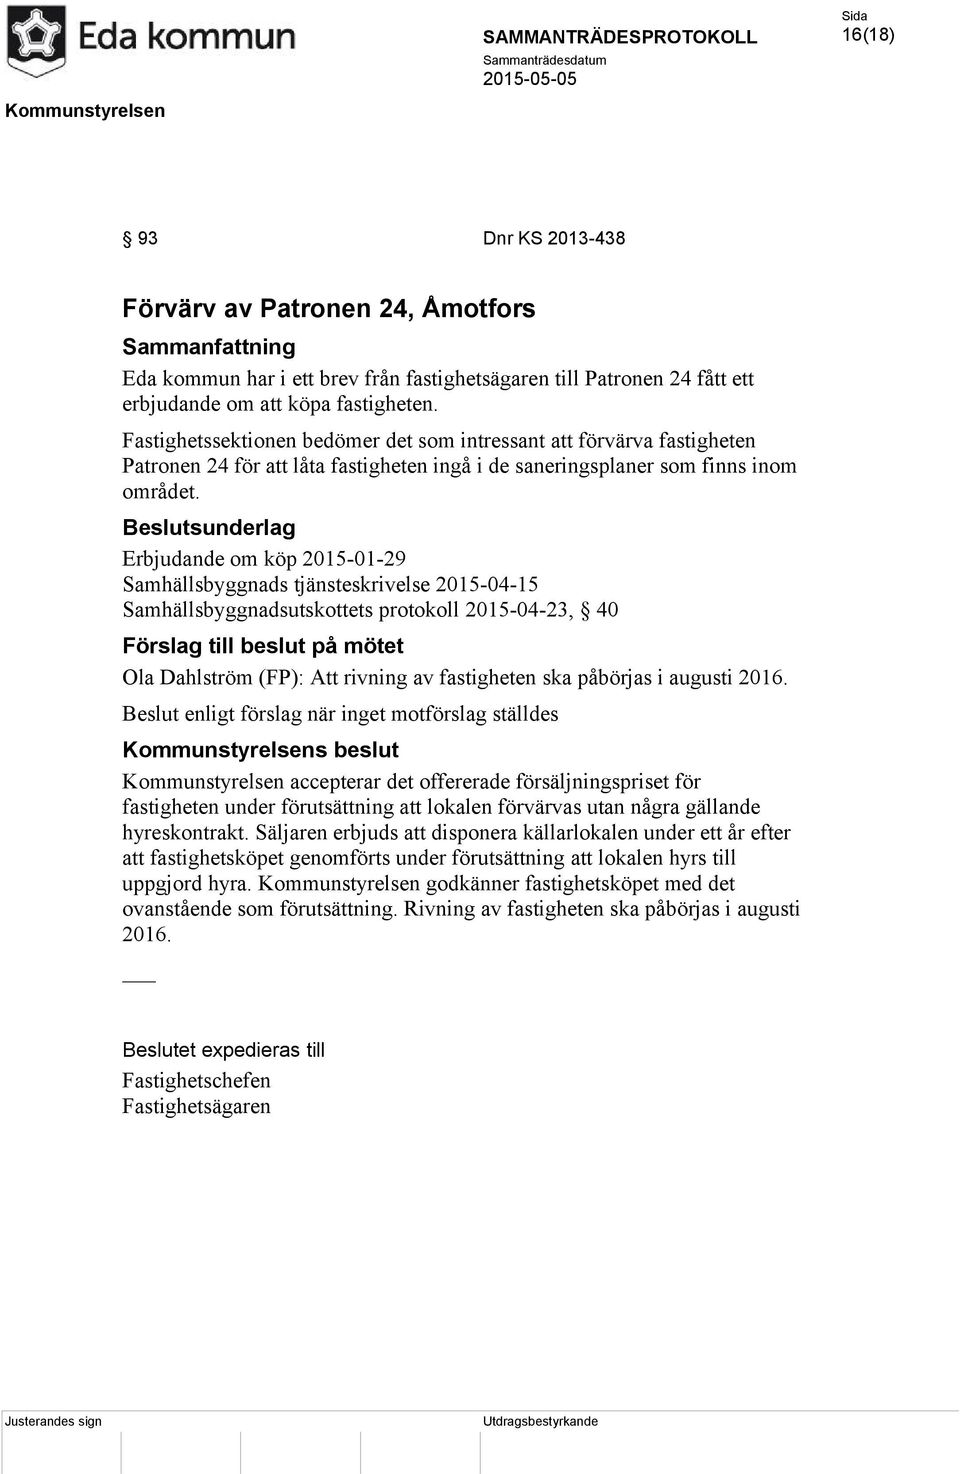 Erbjudande om köp 2015-01-29 Samhällsbyggnads tjänsteskrivelse 2015-04-15 Samhällsbyggnadsutskottets protokoll 2015-04-23, 40 Förslag till beslut på mötet Ola Dahlström (FP): Att rivning av